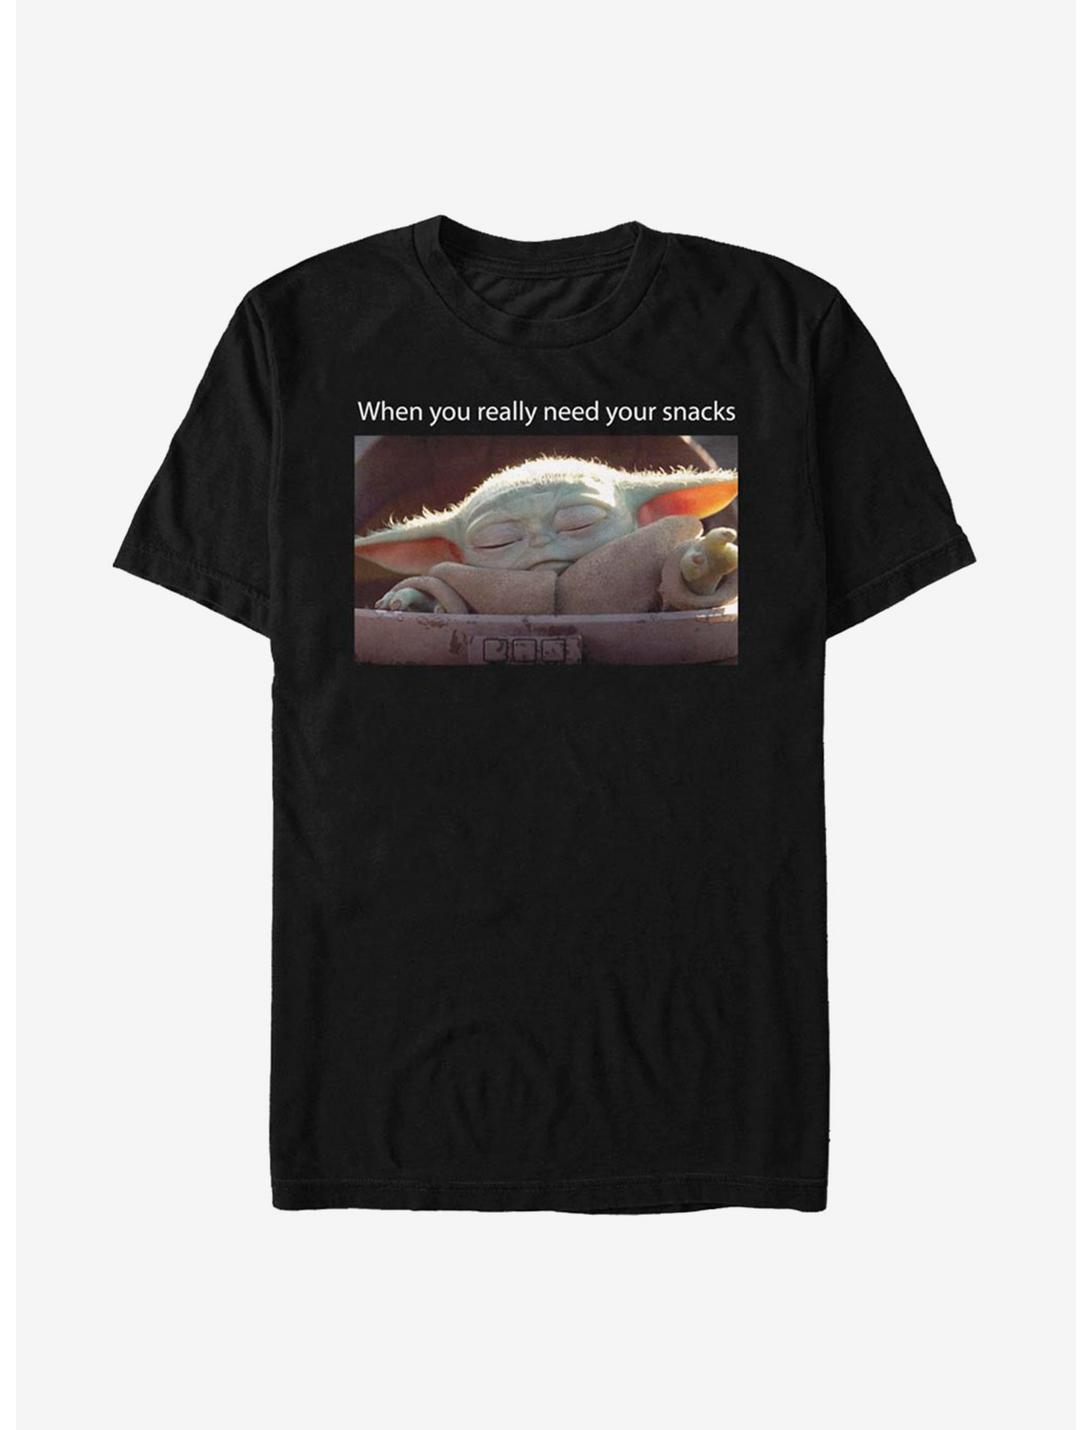 Star Wars The Mandalorian The Child Snack Meme T-Shirt, BLACK, hi-res